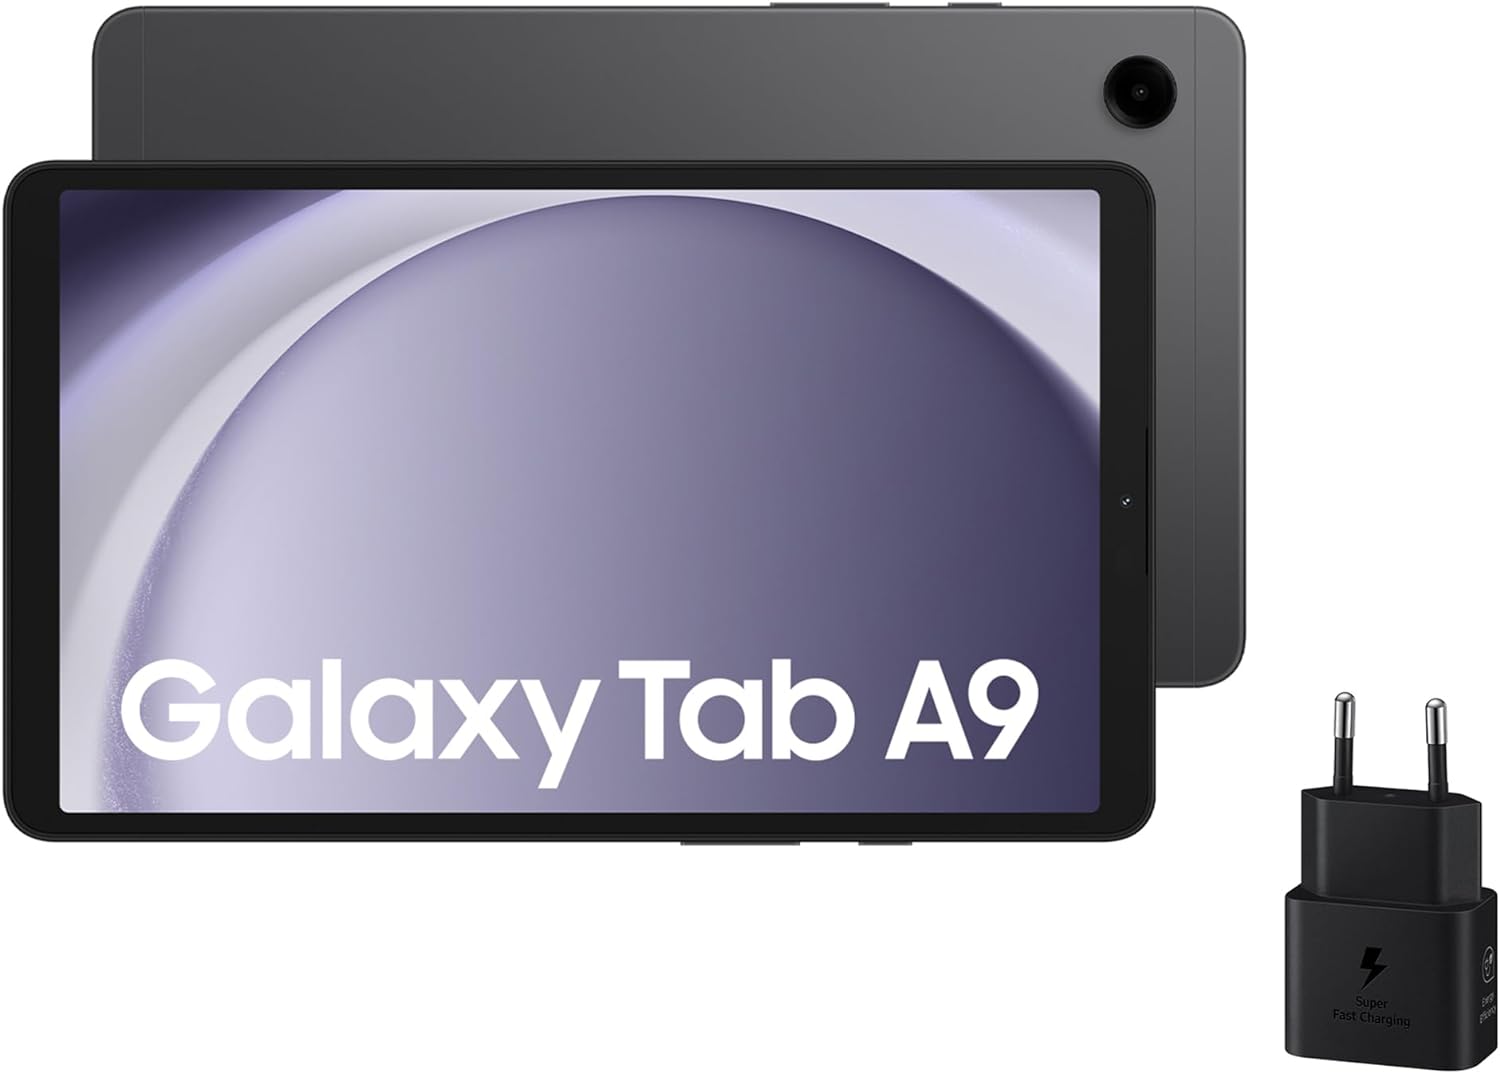 Samsung Galaxy Tab A9 vs A9+